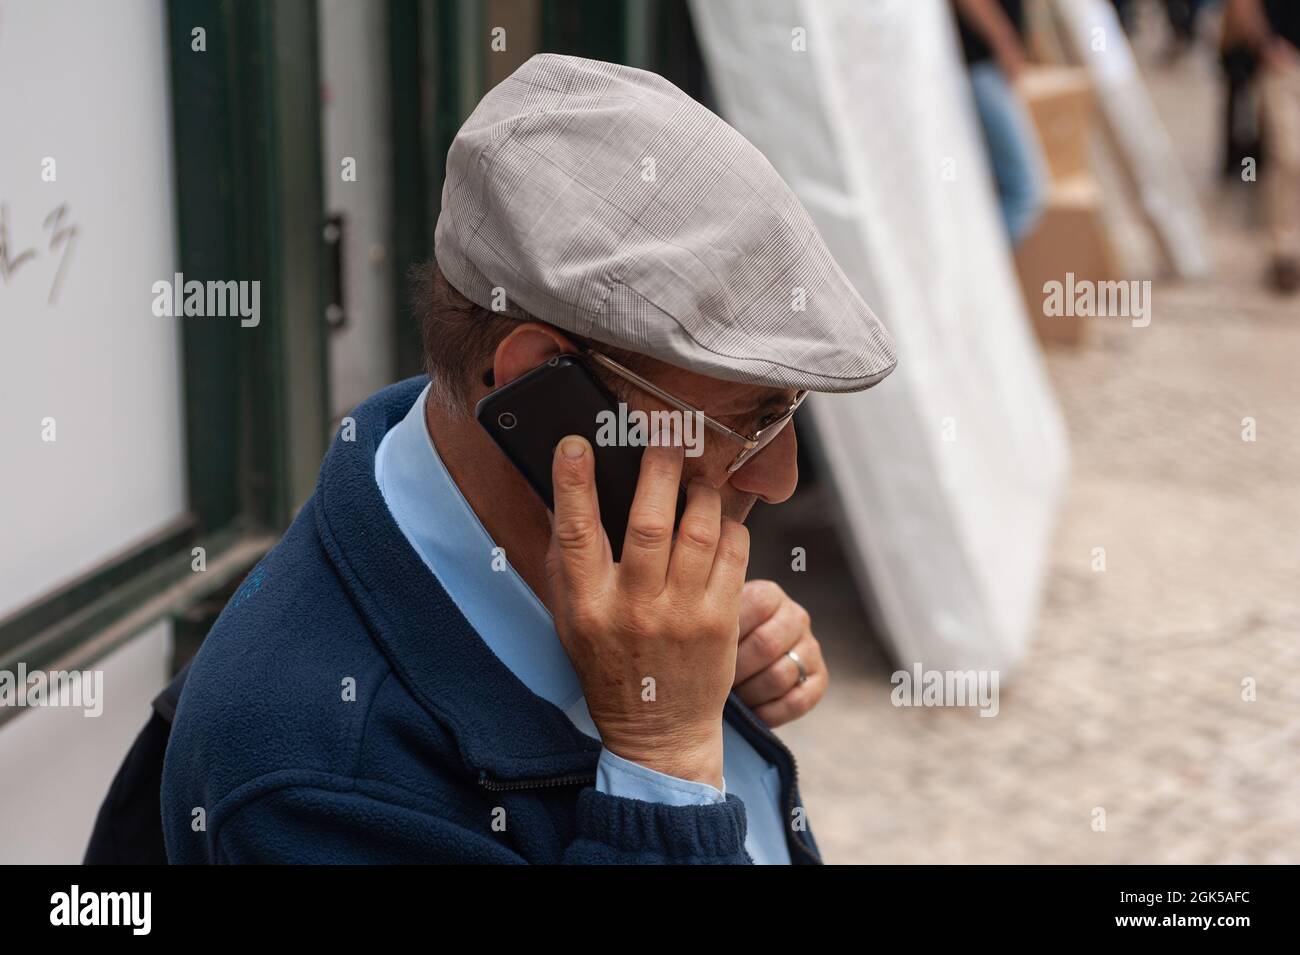 11.06.2018, Lissabon, Portugal, Europa - ein älterer Mann mit flacher Mütze  spricht in der portugiesischen Hauptstadt auf seinem Mobiltelefon  Stockfotografie - Alamy